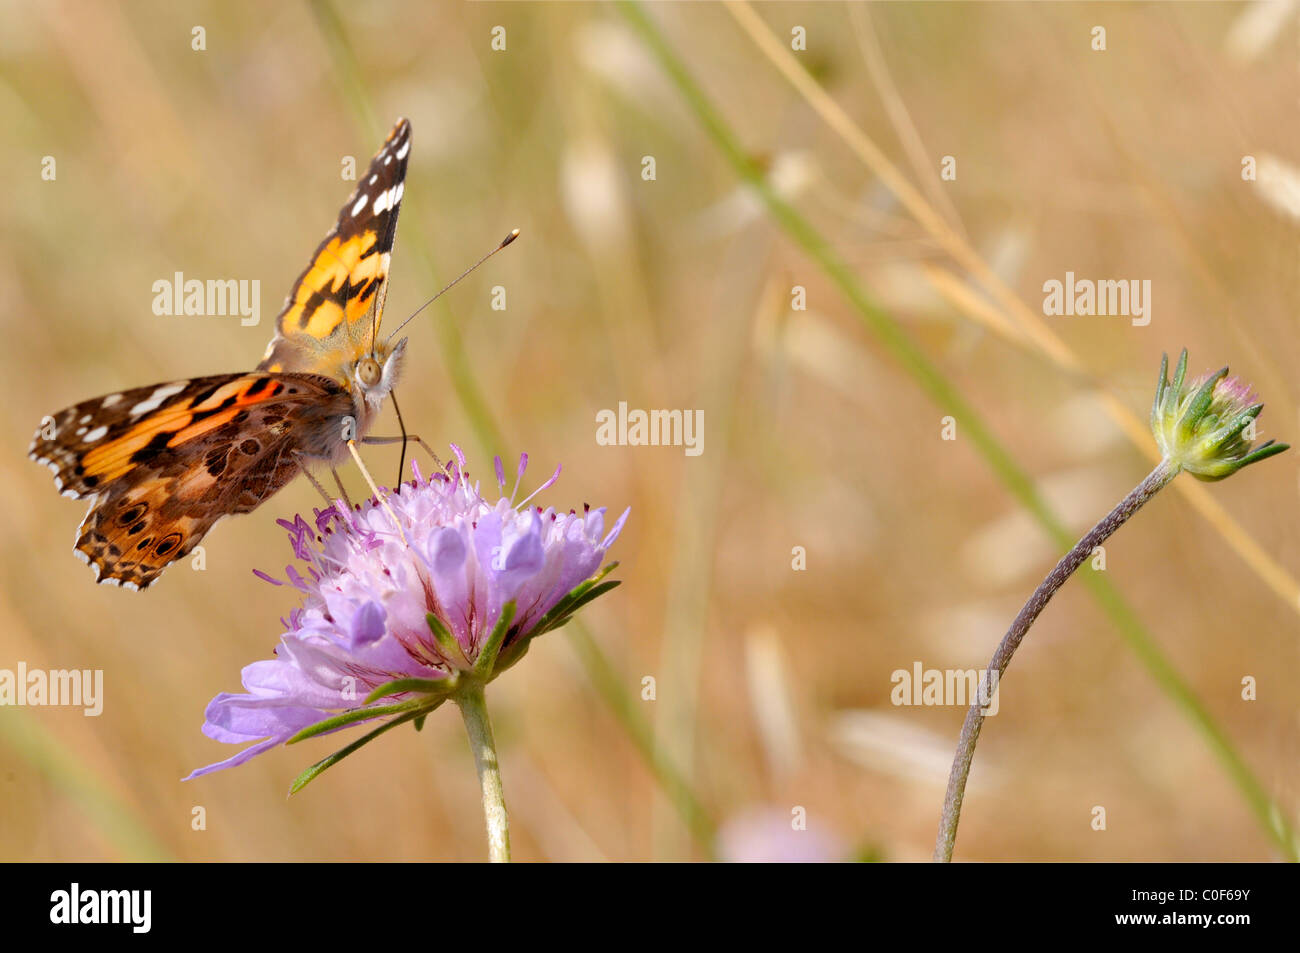 Libre peint lady butterfly (Vanessa cardui) se nourrissant de fleurs mauve scabiosa Banque D'Images